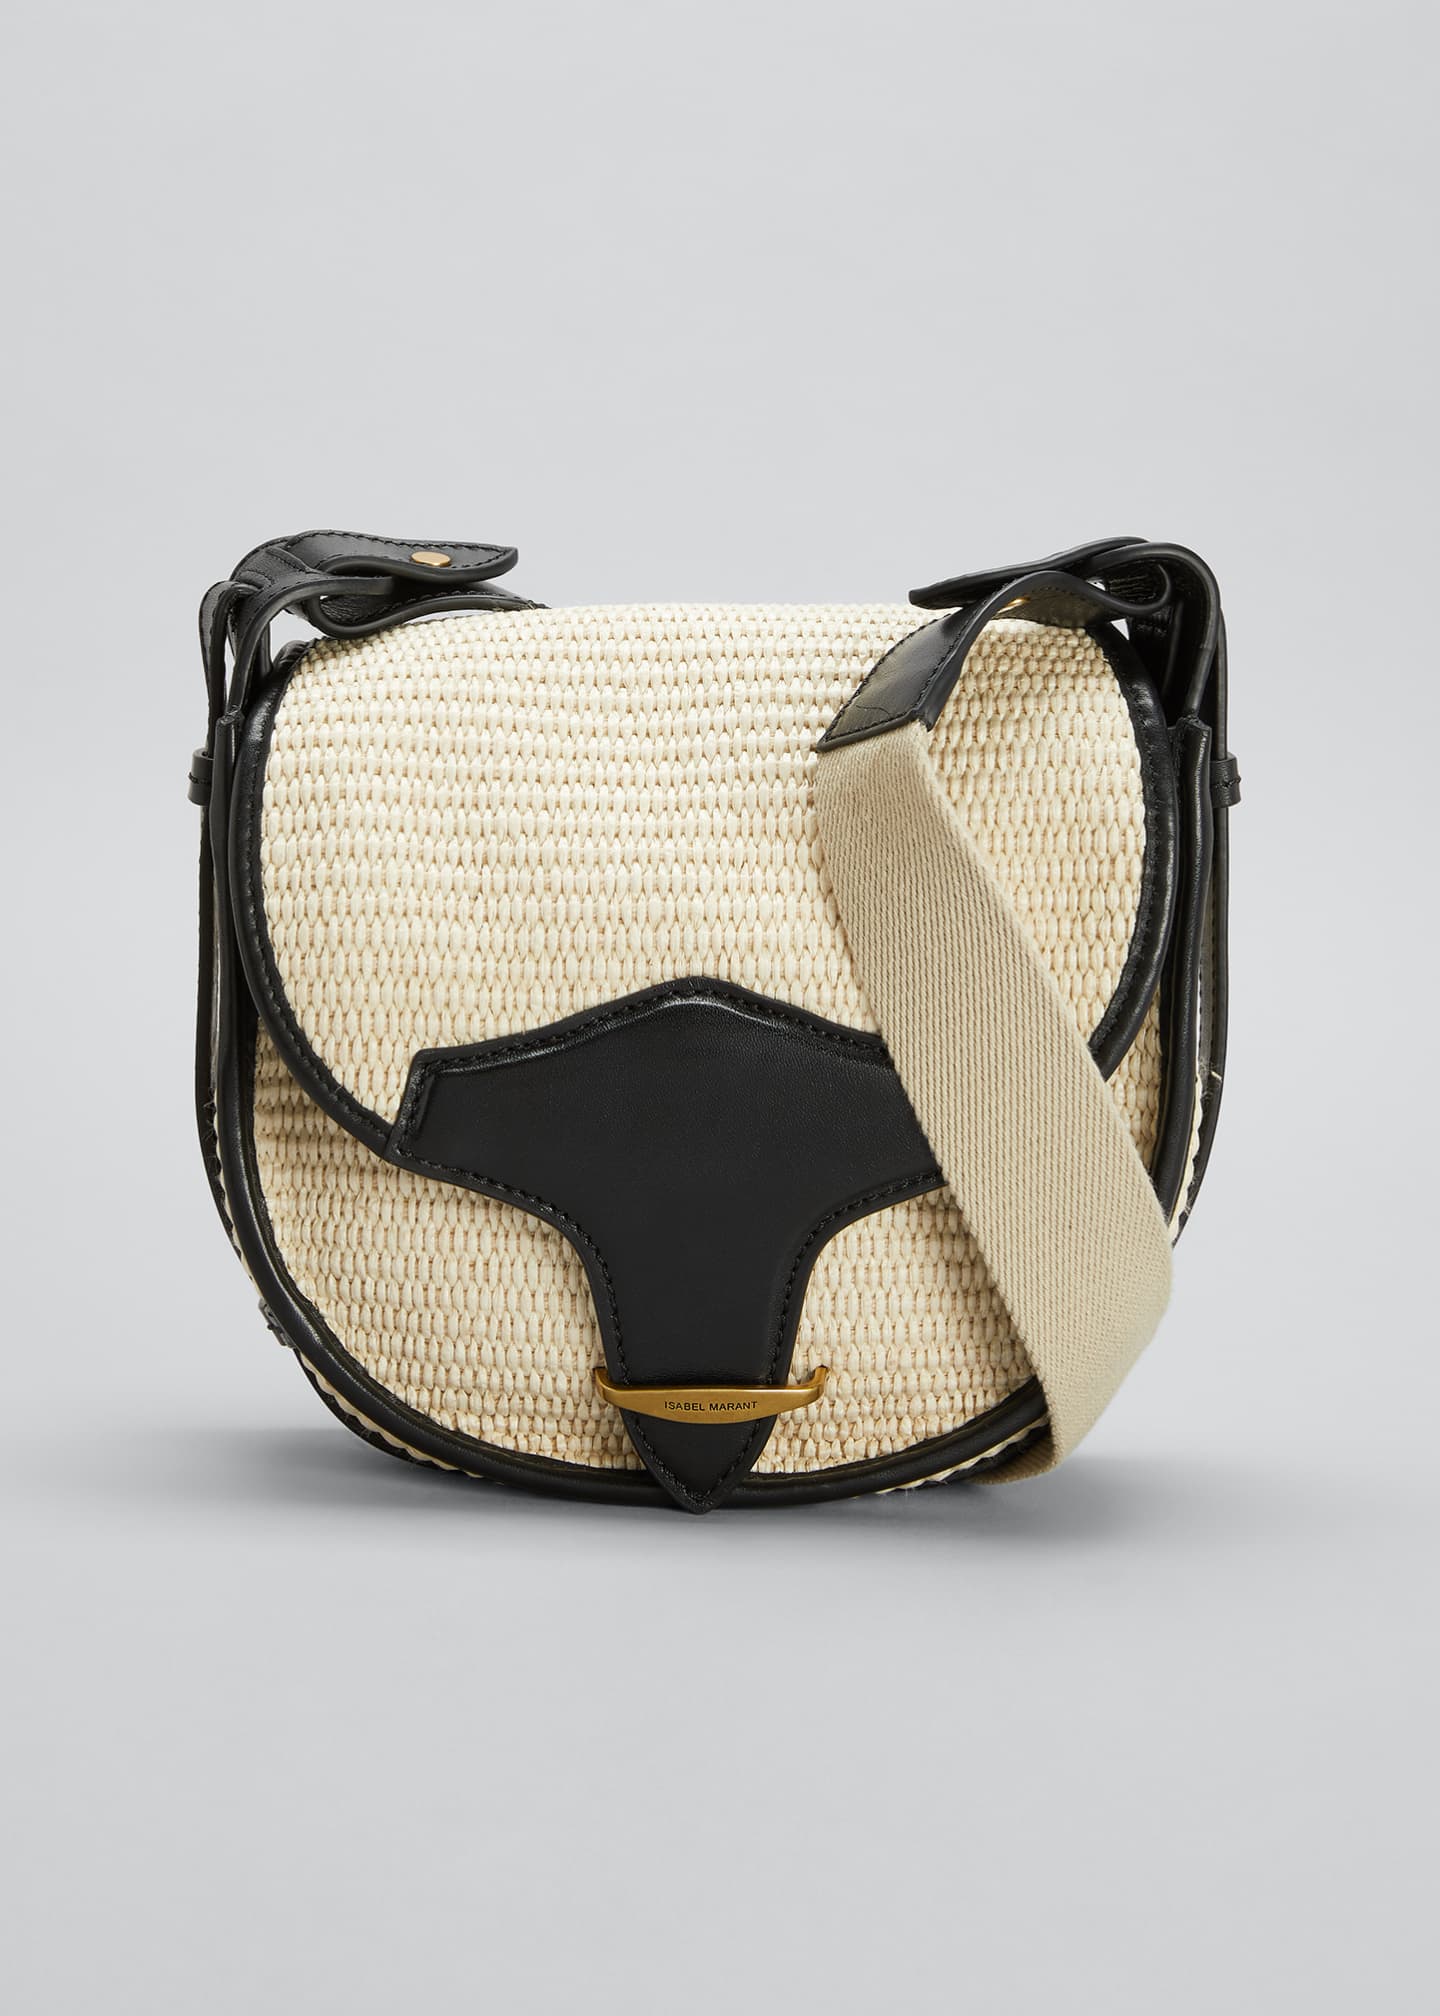 Isabel Marant Botsy Leather Crossbody Bag